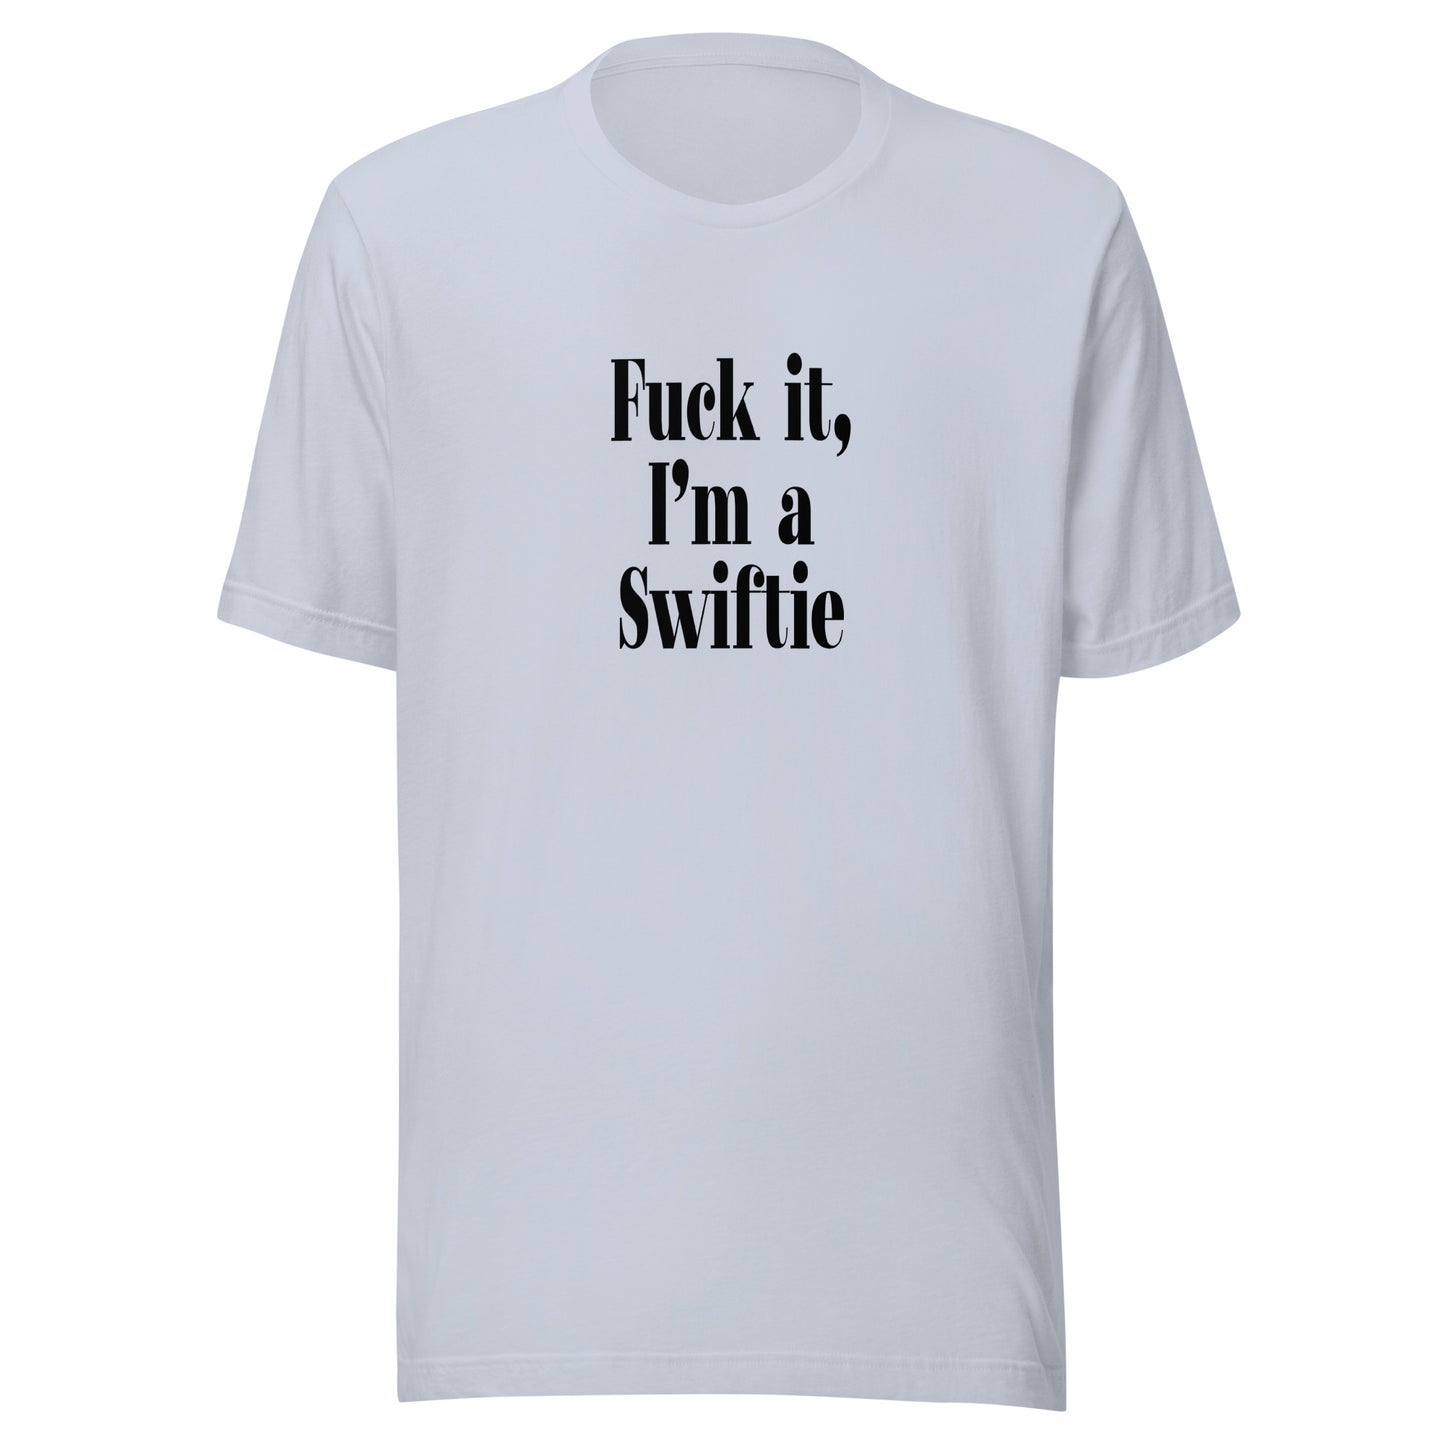 "F*ck it, I'm a Swiftie" T-Shirt